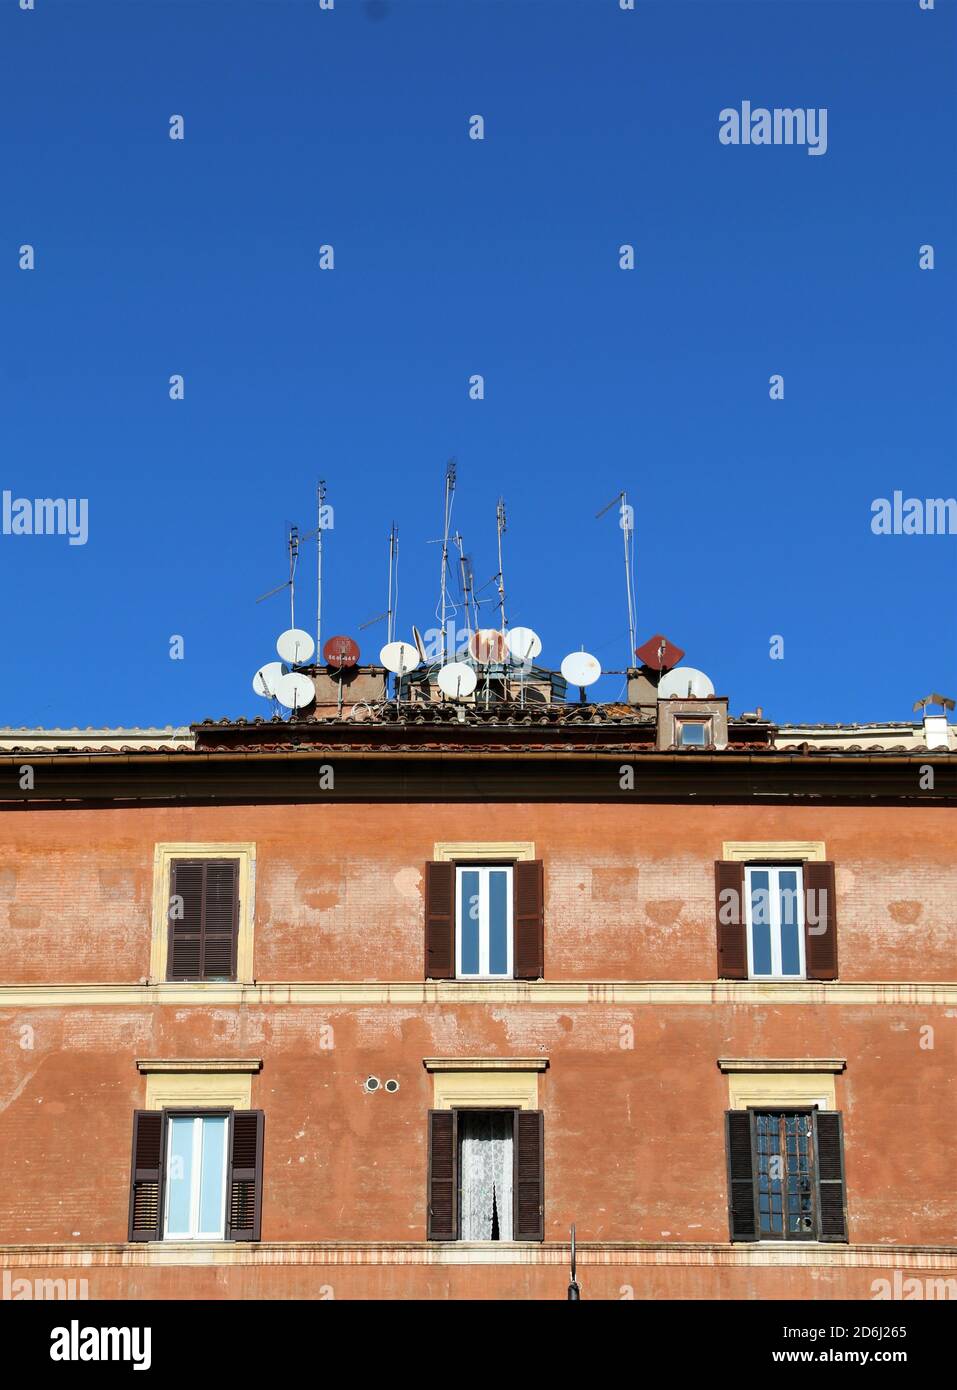 Centro storico del quartiere Trastevere nel centro di Roma.le vecchie antenne sui tetti degli edifici che sembrano essere parte della decorazione. Foto Stock